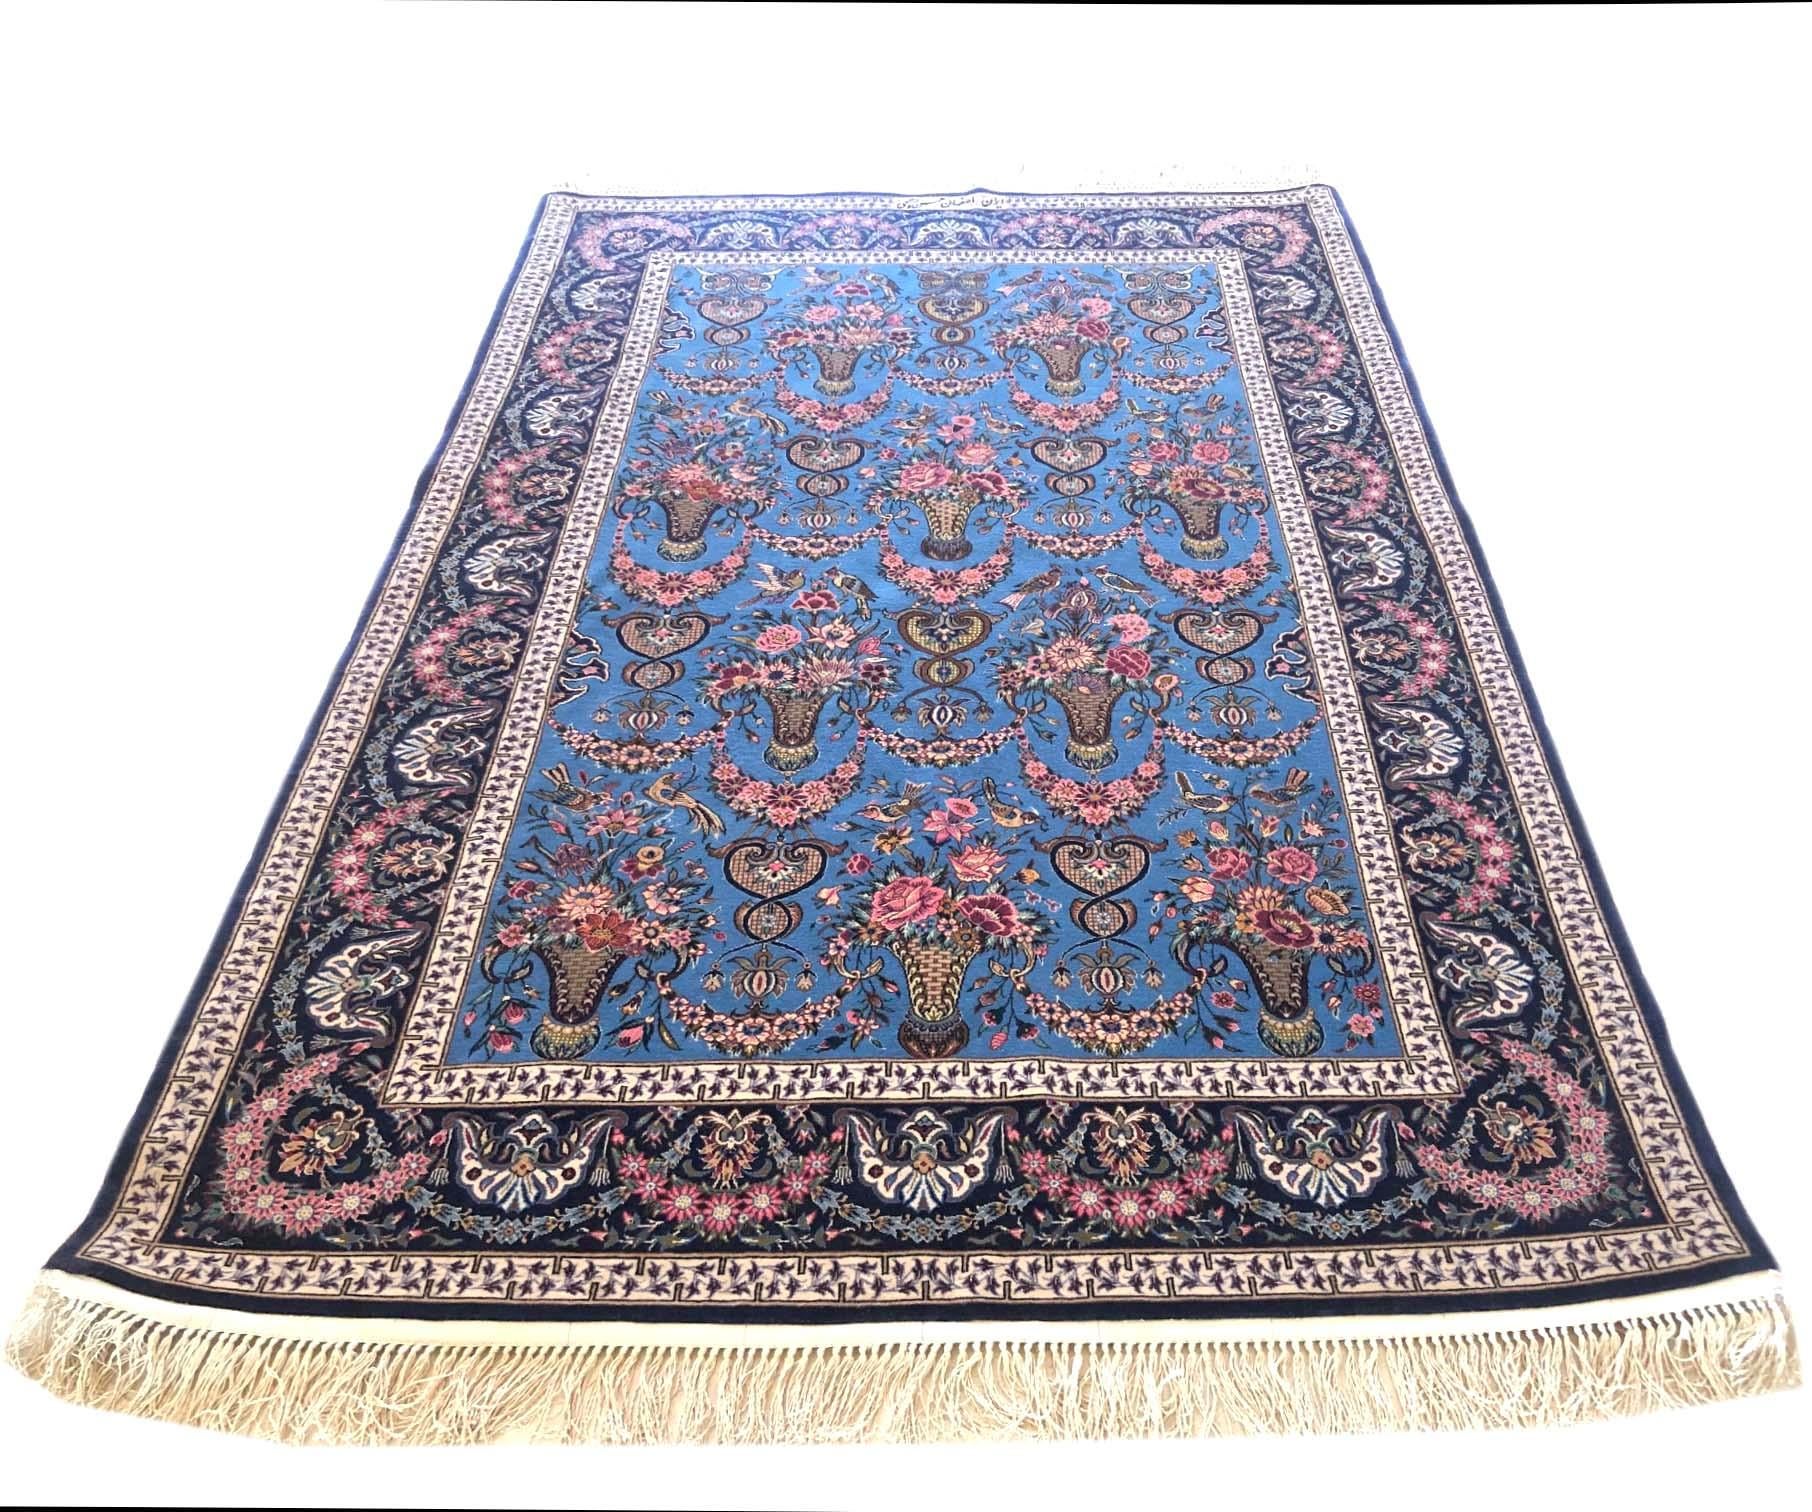 Diese authentische persische Isfahan Teppich hat Wolle und Seide Flor auf Seide Grundlage mit einem ausgezeichneten Zustand. Die Farbkombination und das Design (A-symmetrisches Blumenvasenmuster) dieses Teppichs sind absolut einzigartig. Dieser